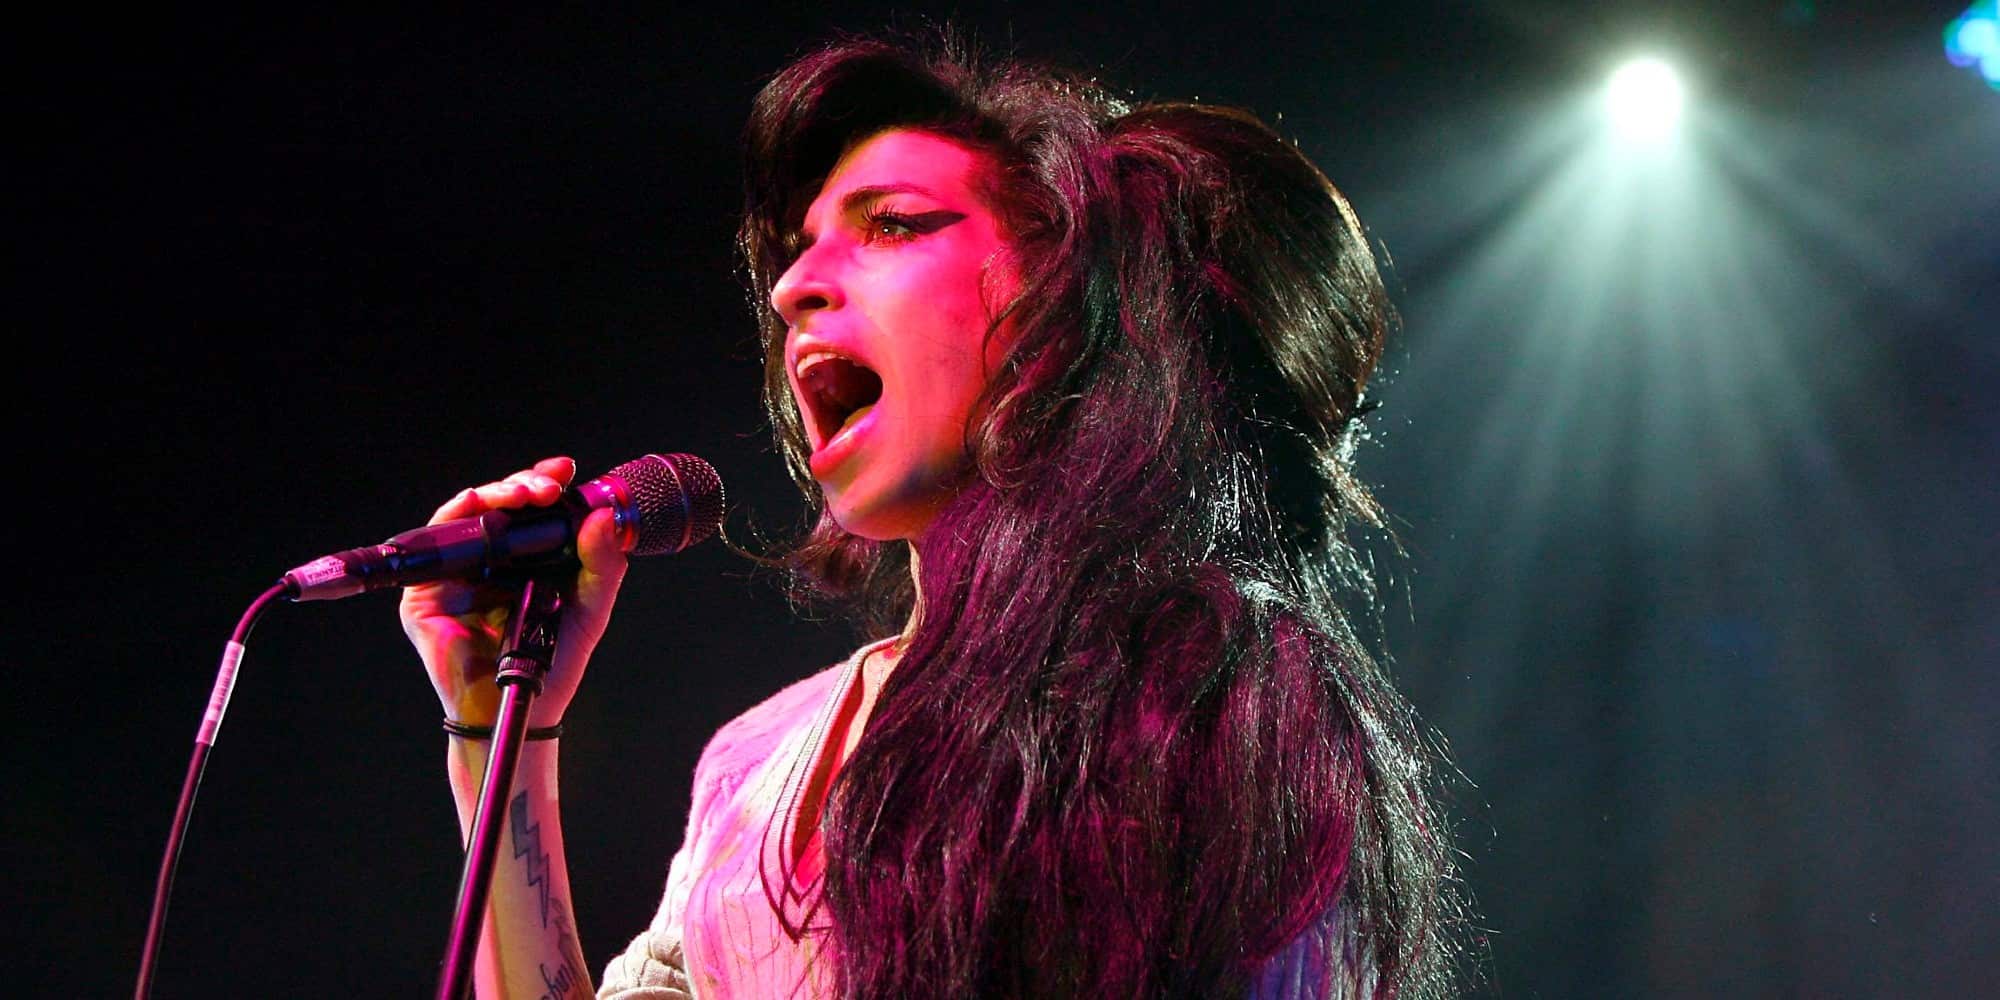 Η τραγουδίστρια Amy Winehouse πέθανε το 2011 σε ηλικία μόλις 27 ετών